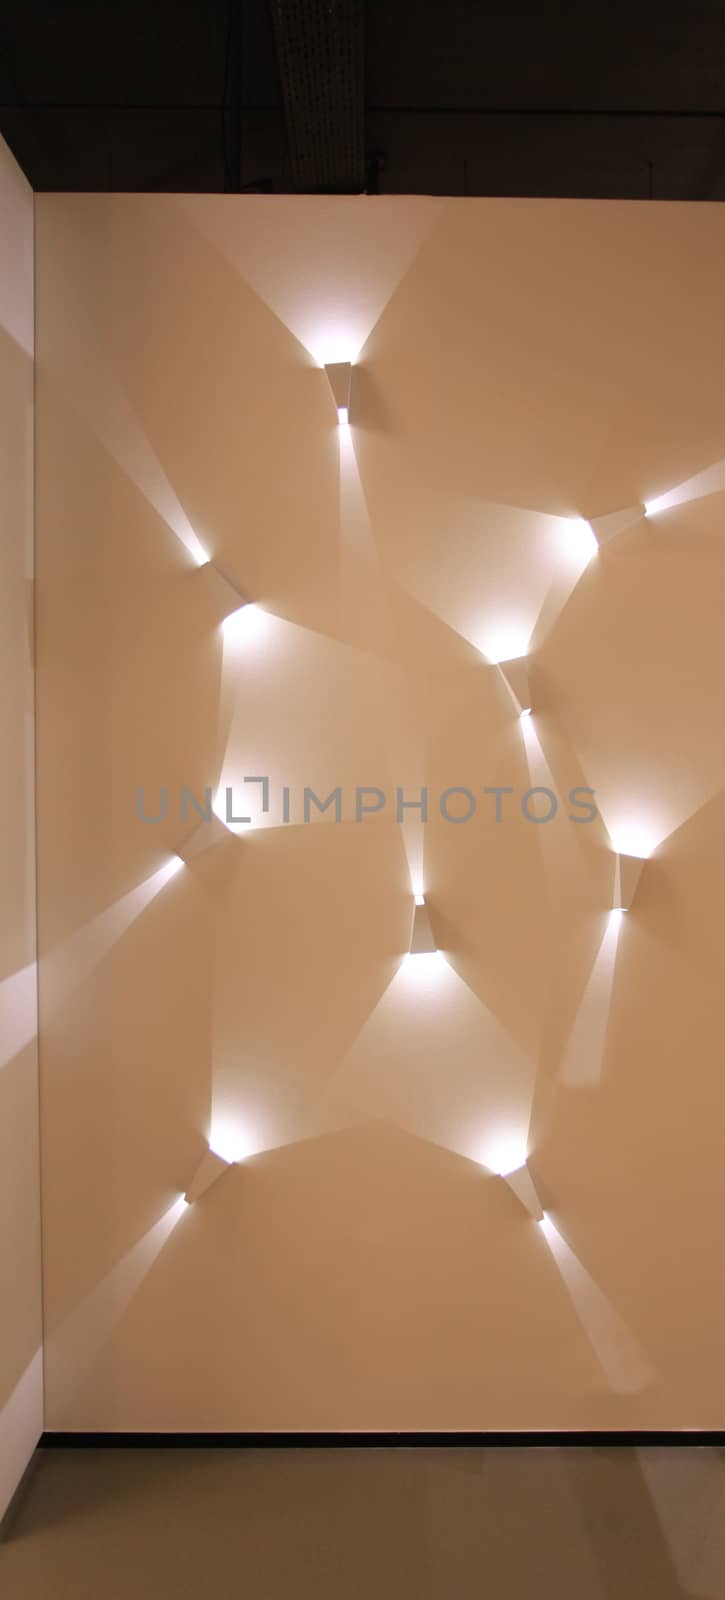 light abstract installation by mrivserg